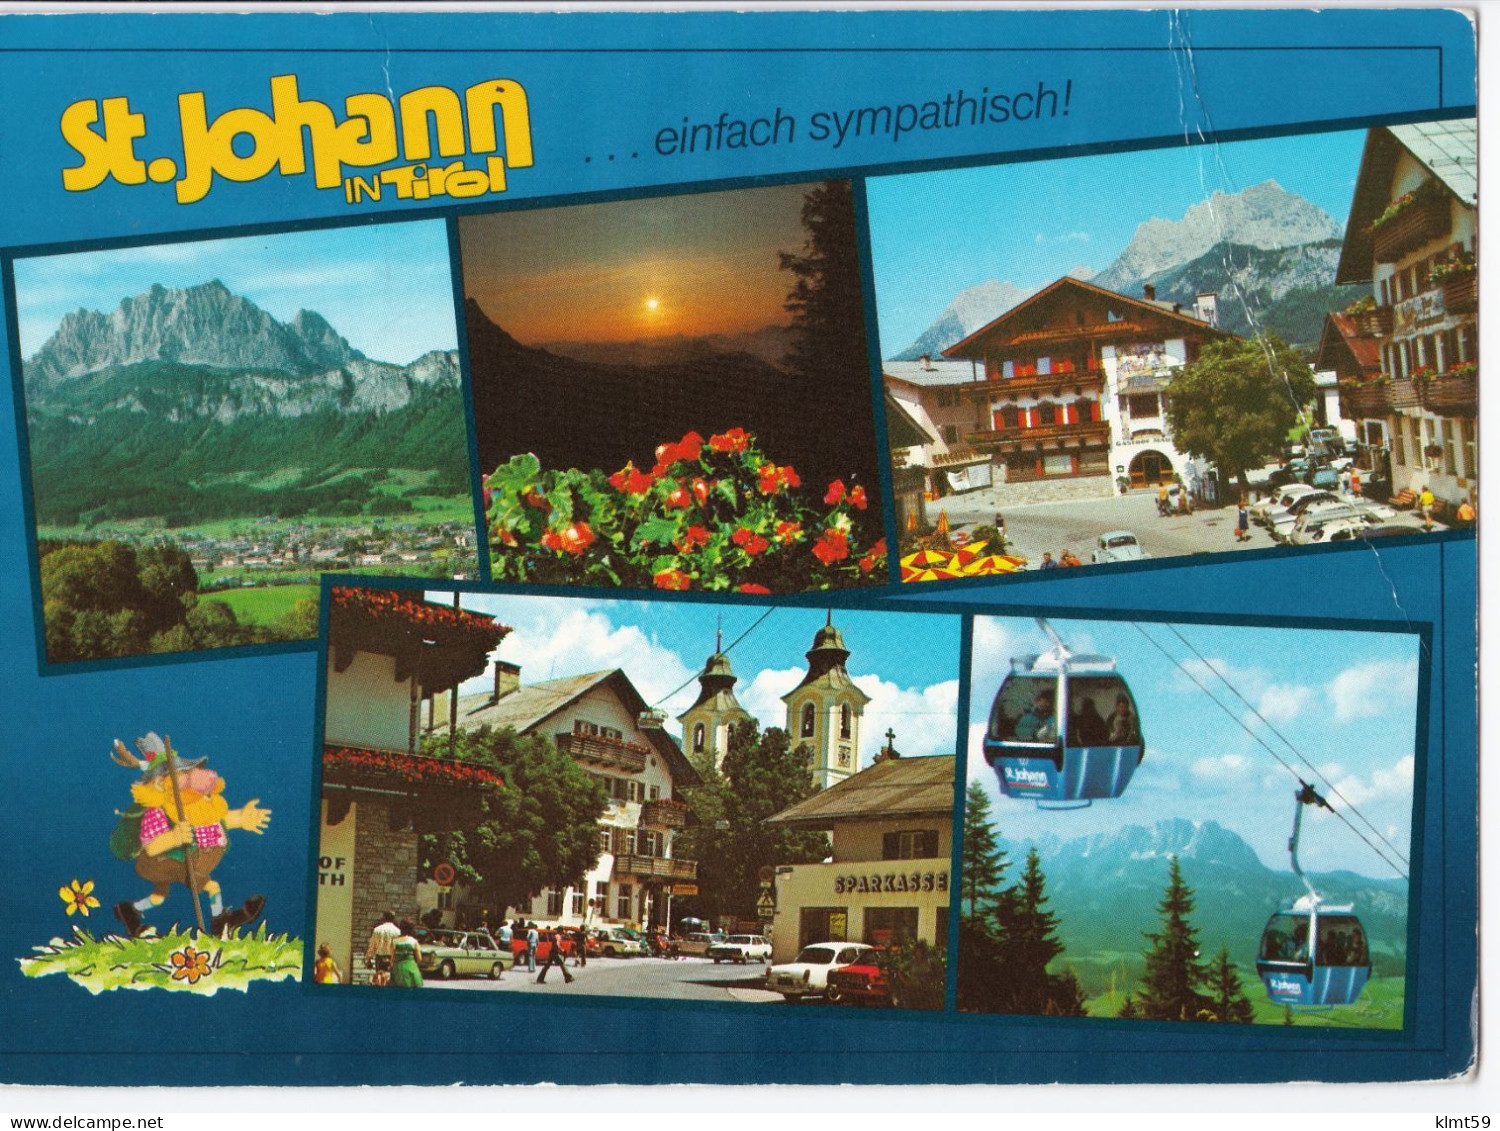 St. Johann In Tirol - St. Johann In Tirol